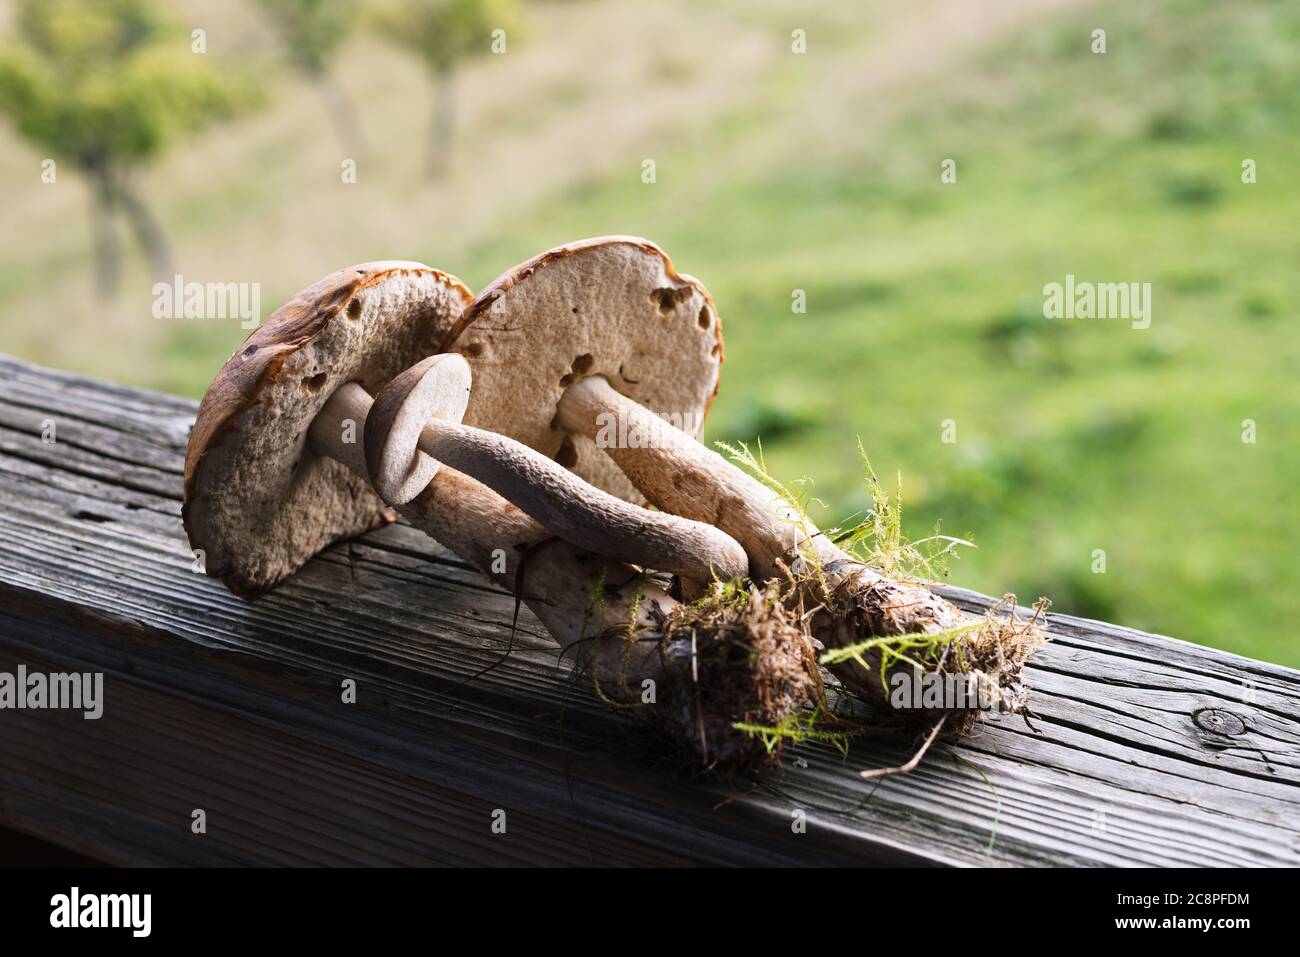 Brauner Kappenbolet sind Sommer essbare Pilze. Natürliche Waldnahrung. Ernte in den ukrainischen Karpaten Stockfoto